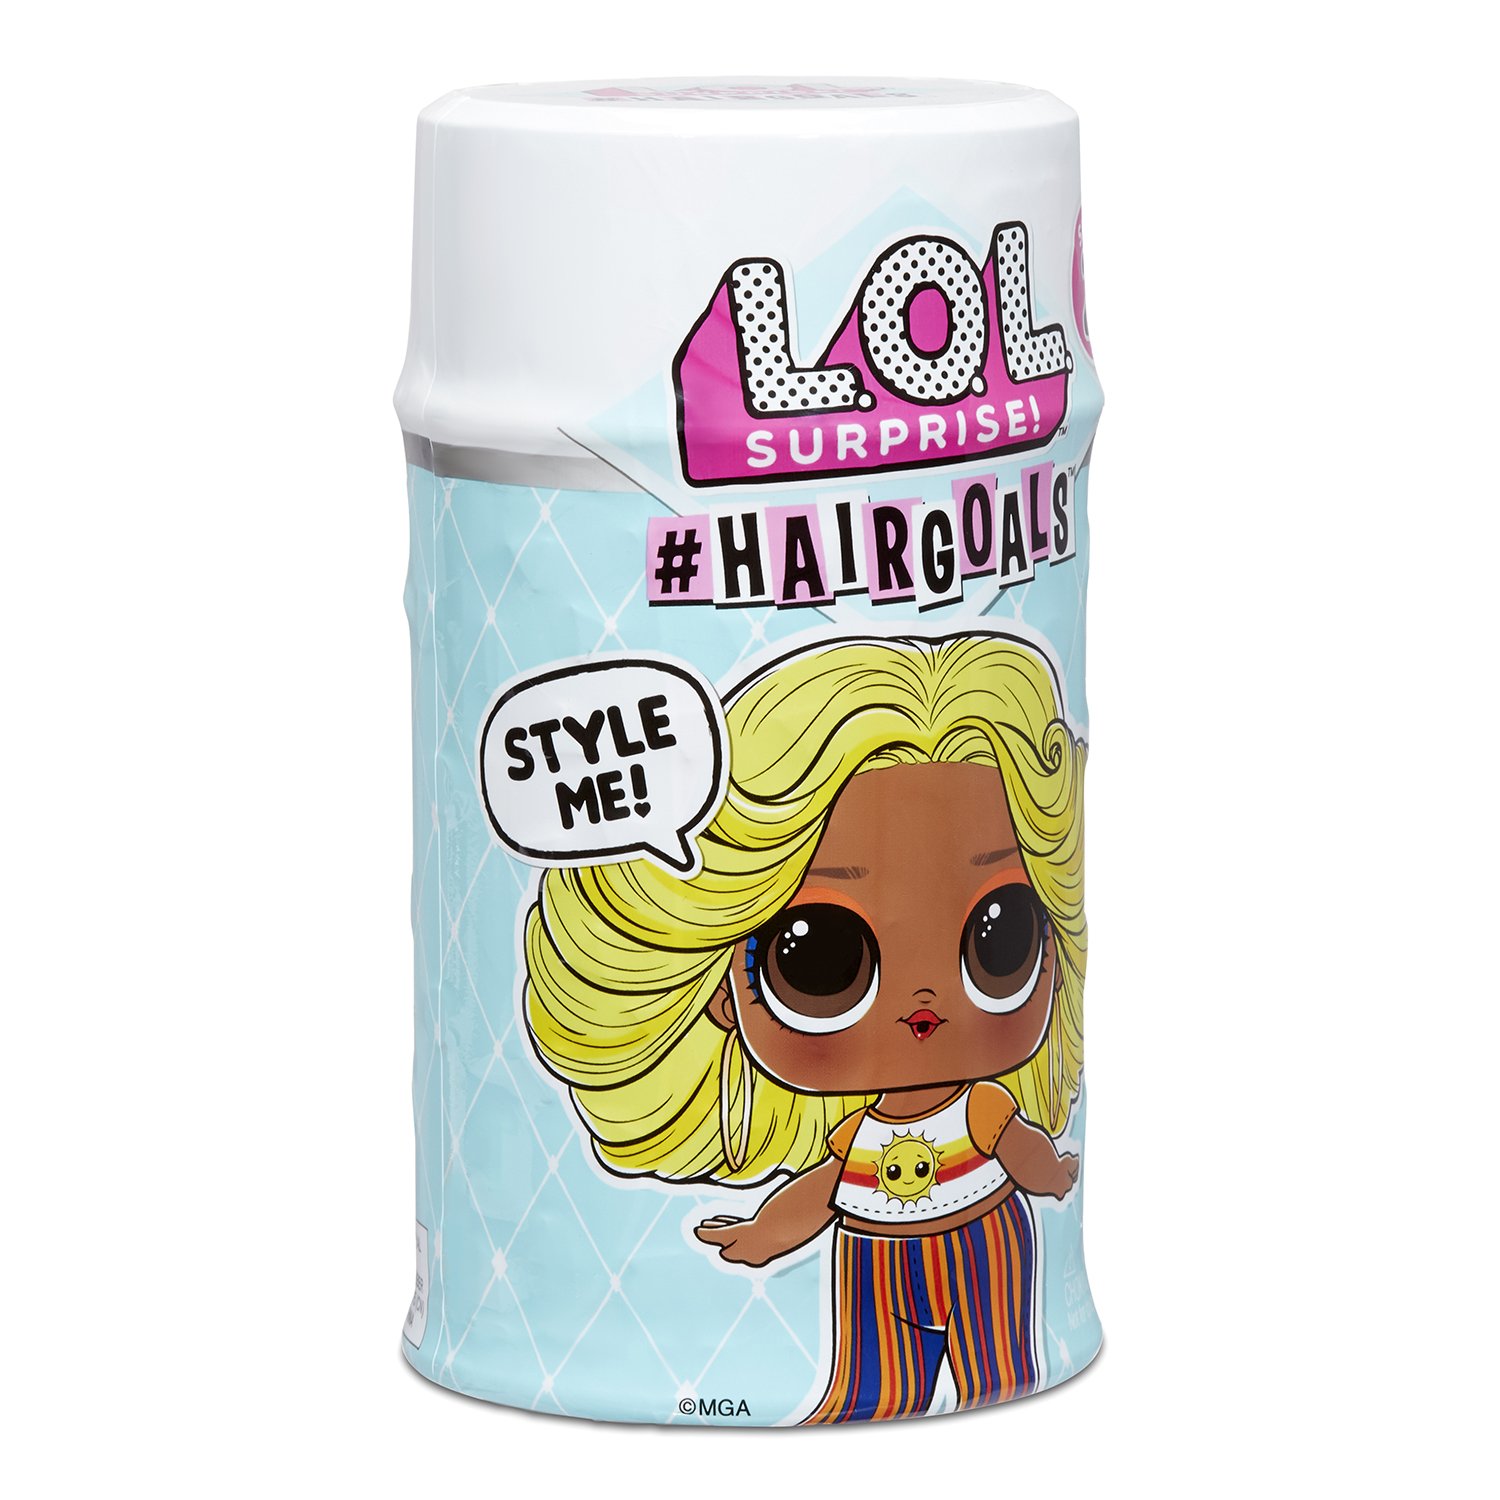 Кукла L.O.L. Surprise! Hairgoals 2.0 в непрозрачной упаковке (Сюрприз) 572657EUC